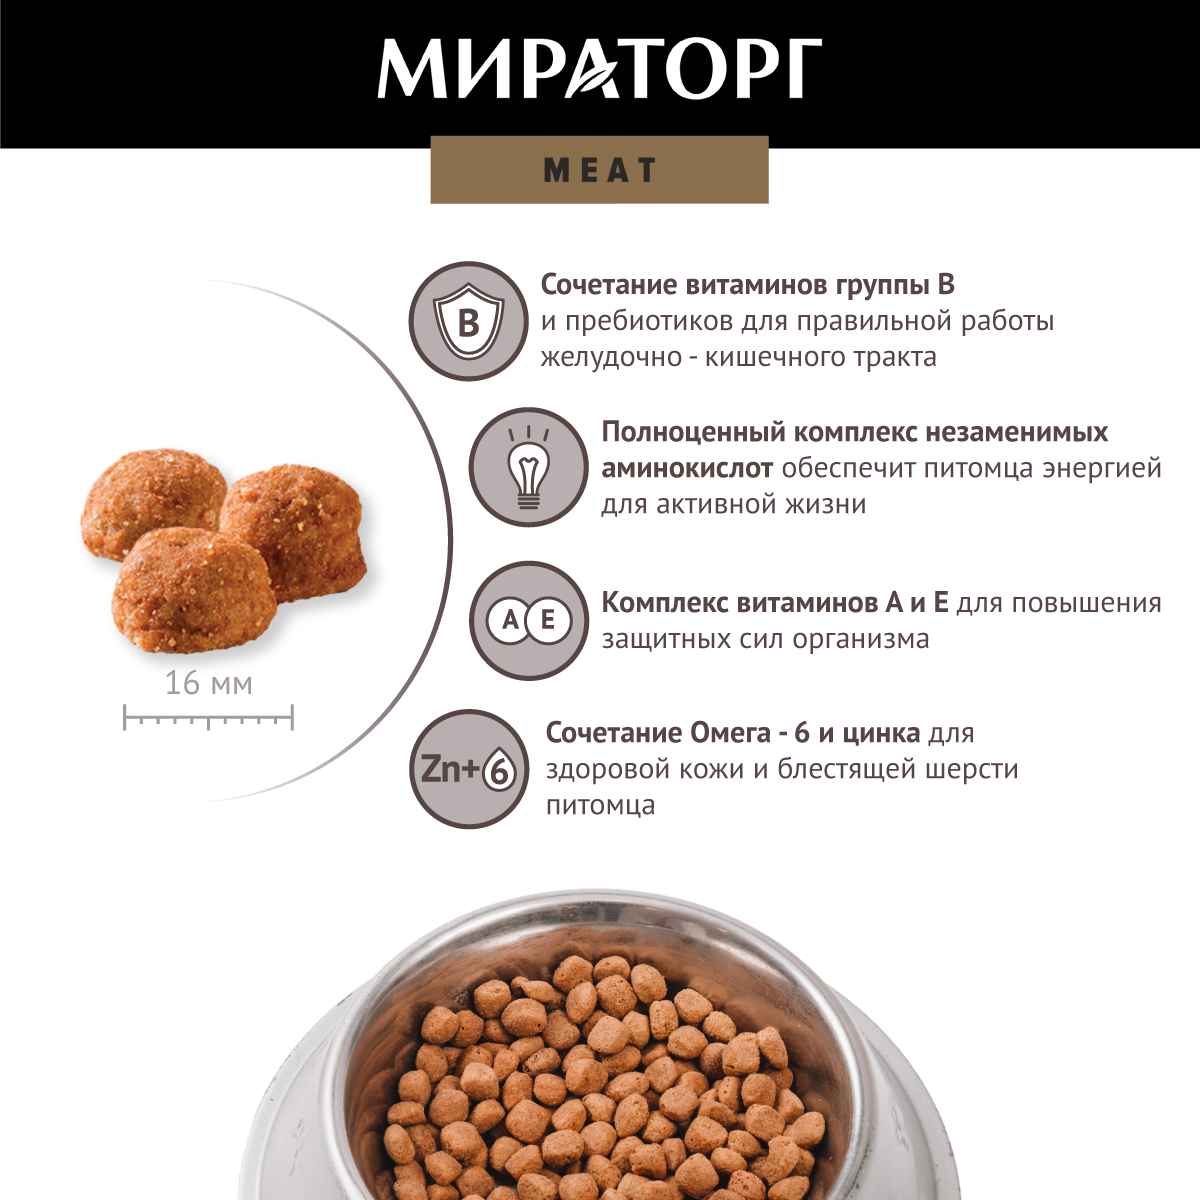 Мираторг Meat корм для собак средних и крупных пород, с сочной говядиной 10 кг